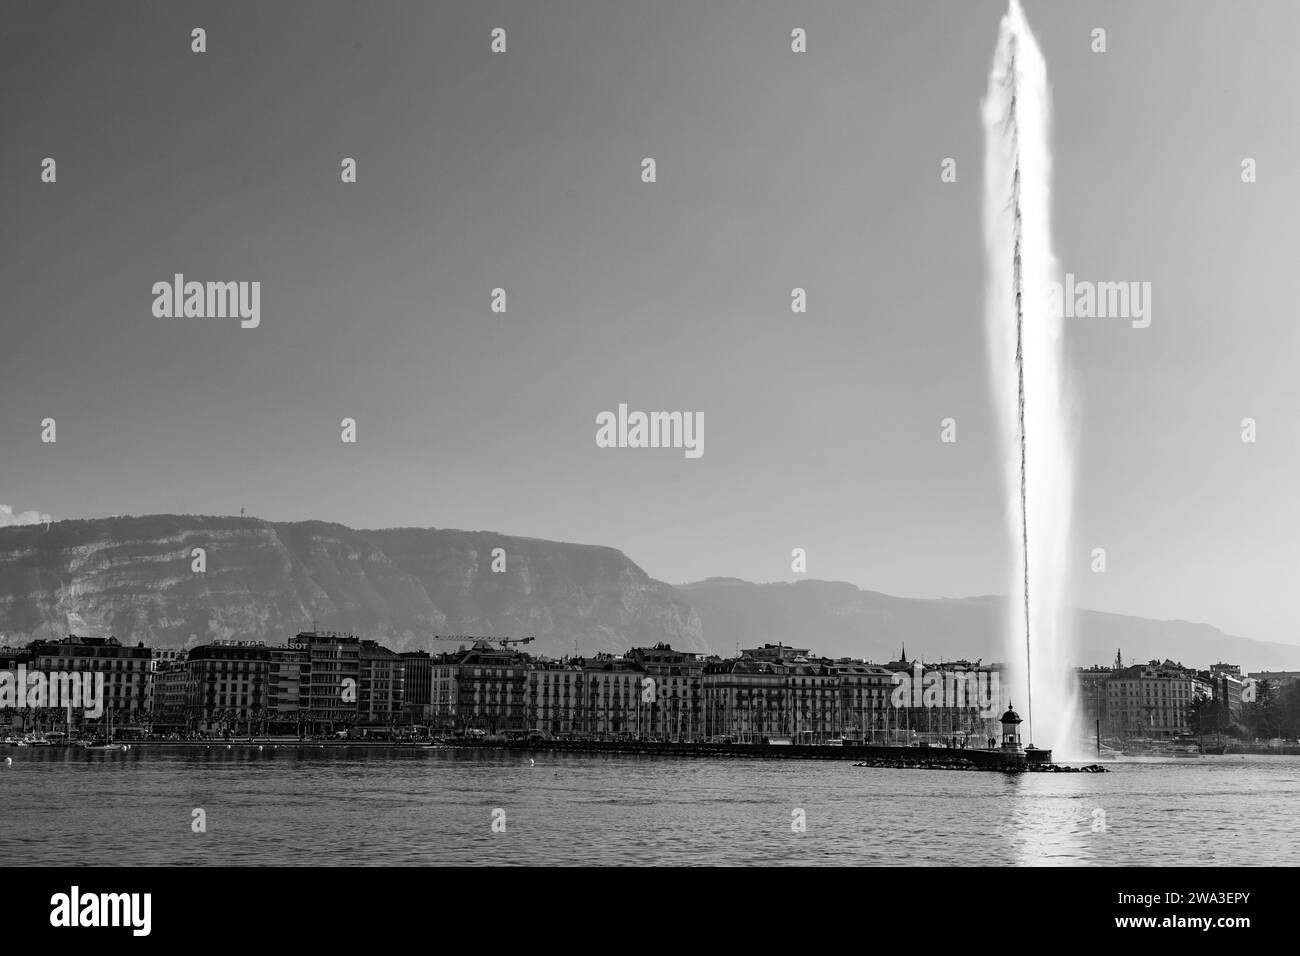 Genf, Schweiz - 25. März 2022: Der Jet d'Eau ist ein großer Brunnen in Genf, Schweiz und eines der berühmtesten Wahrzeichen der Stadt. Stockfoto